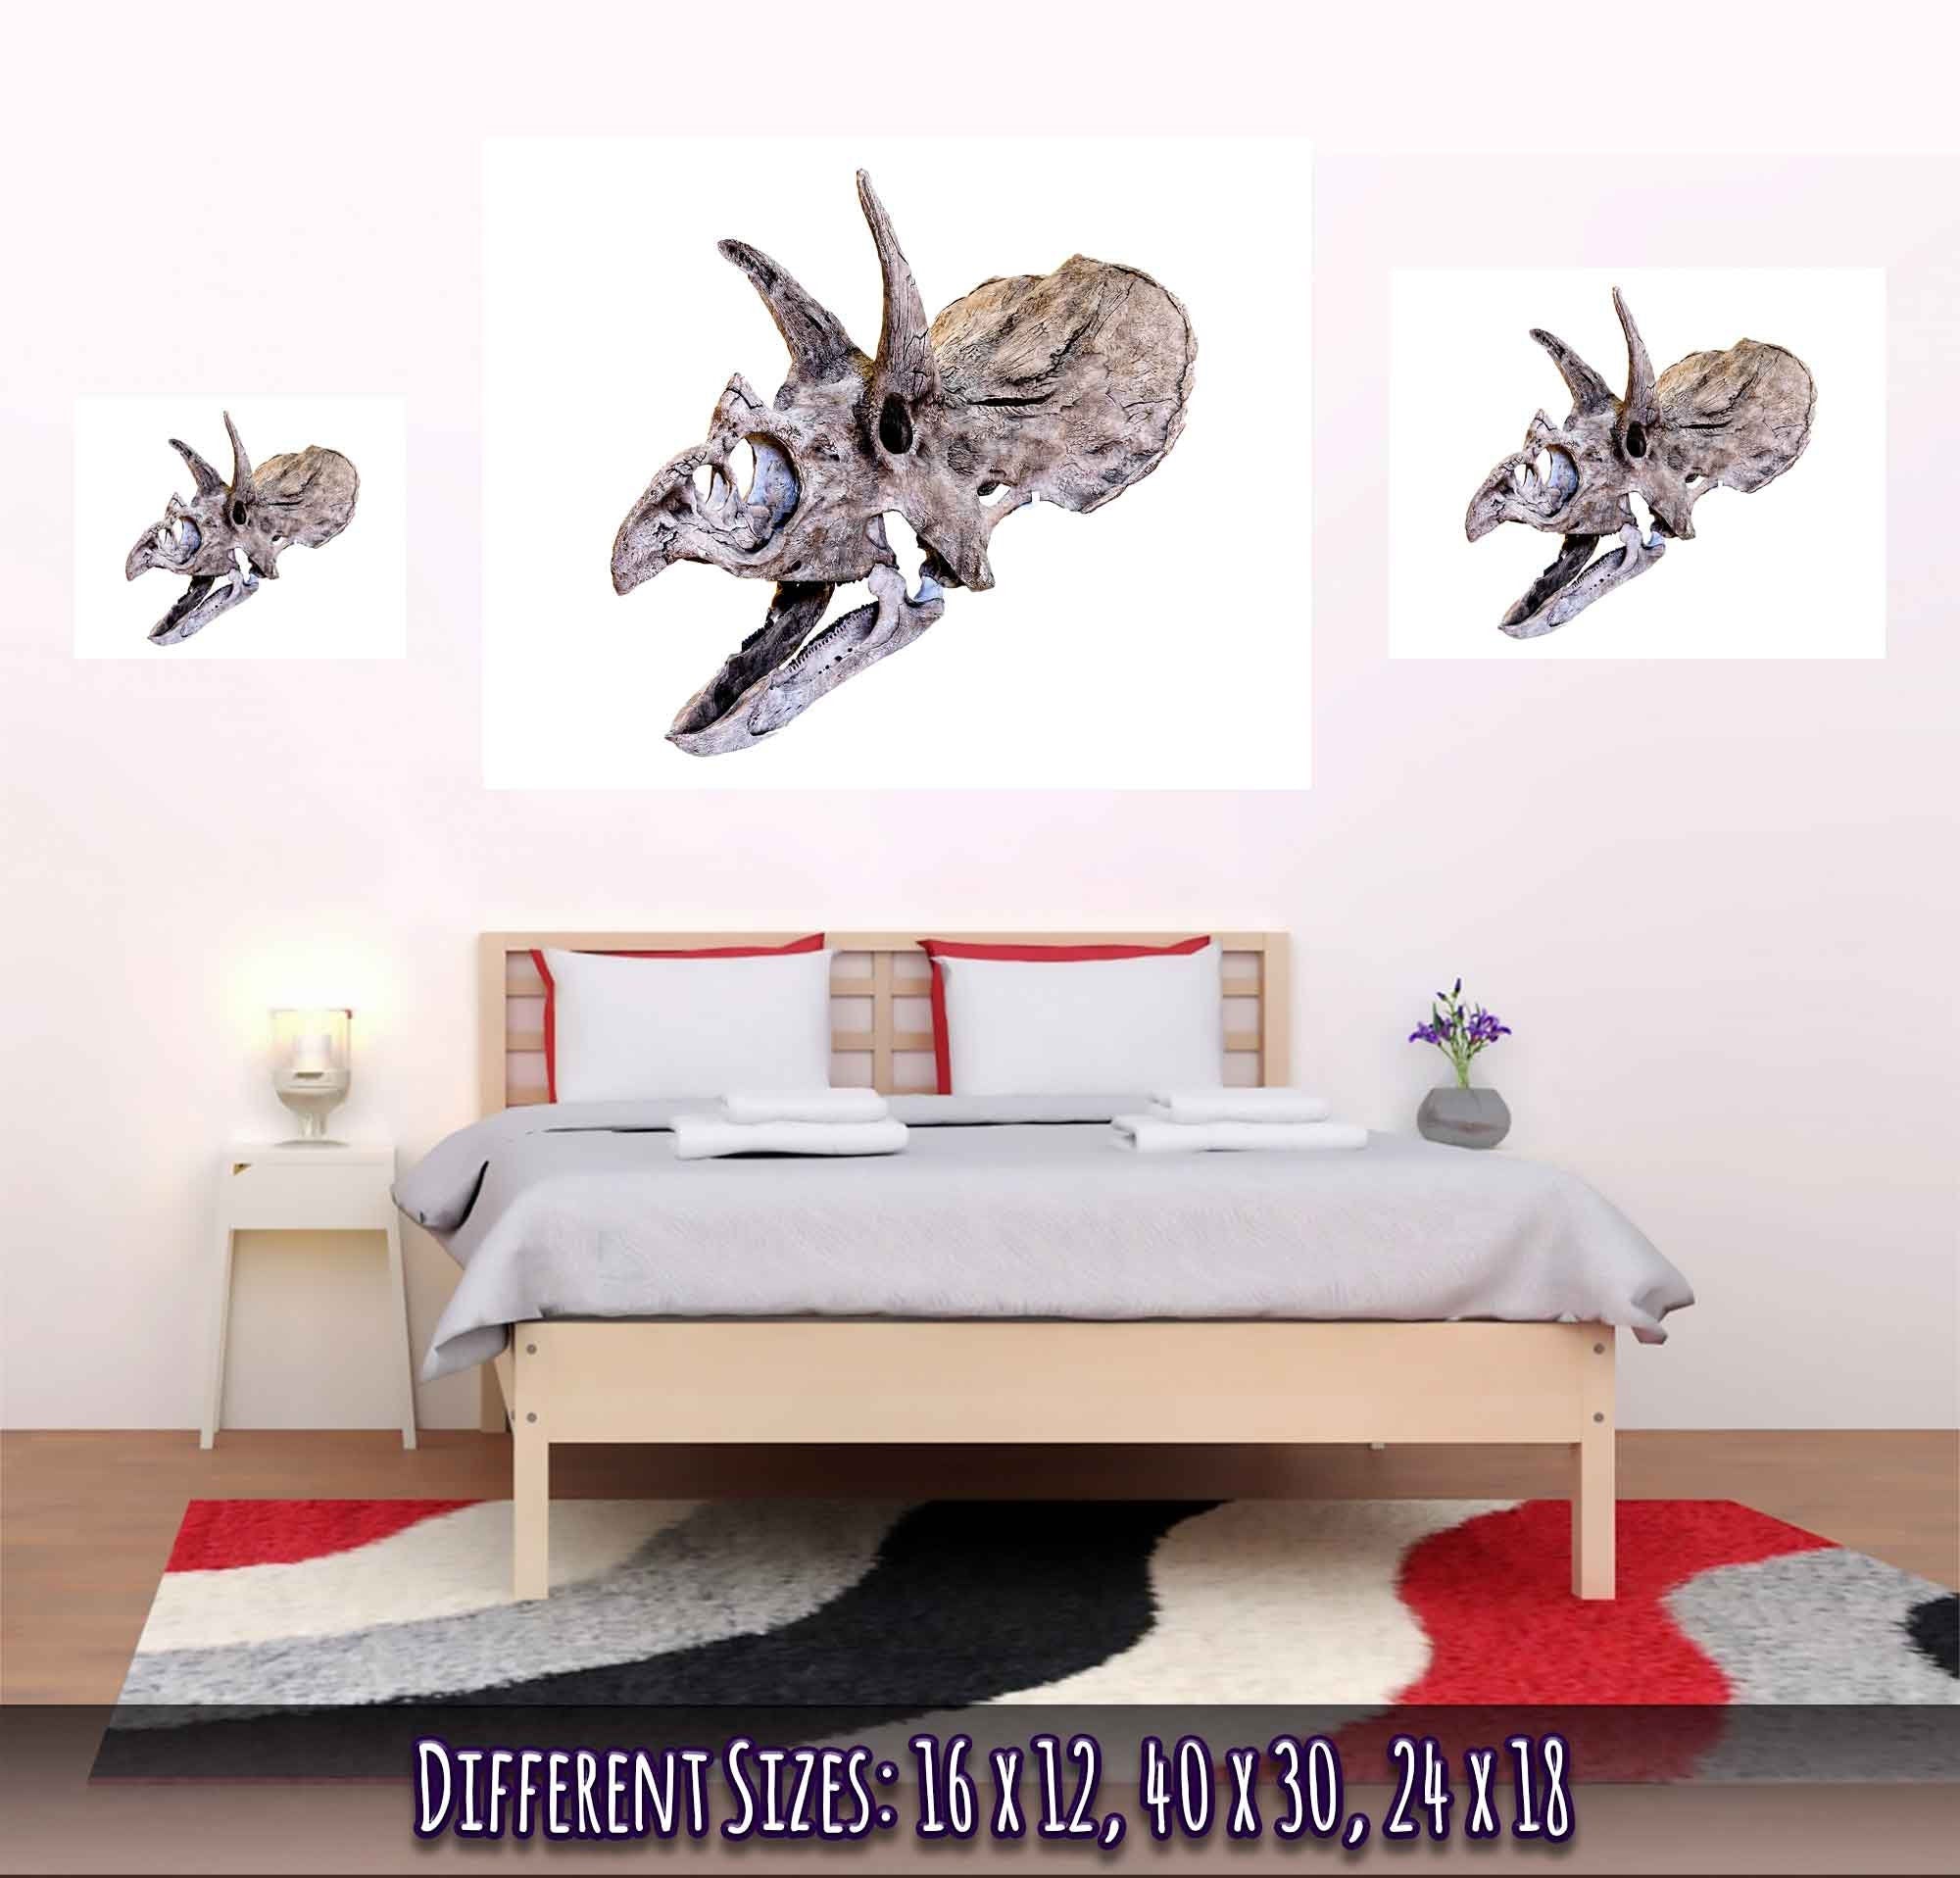 Triceratops Skull Poster, Vintage Triceratops Horridus Skull Art - Triceratops Skeleton Skull Print - WallArtPrints4U